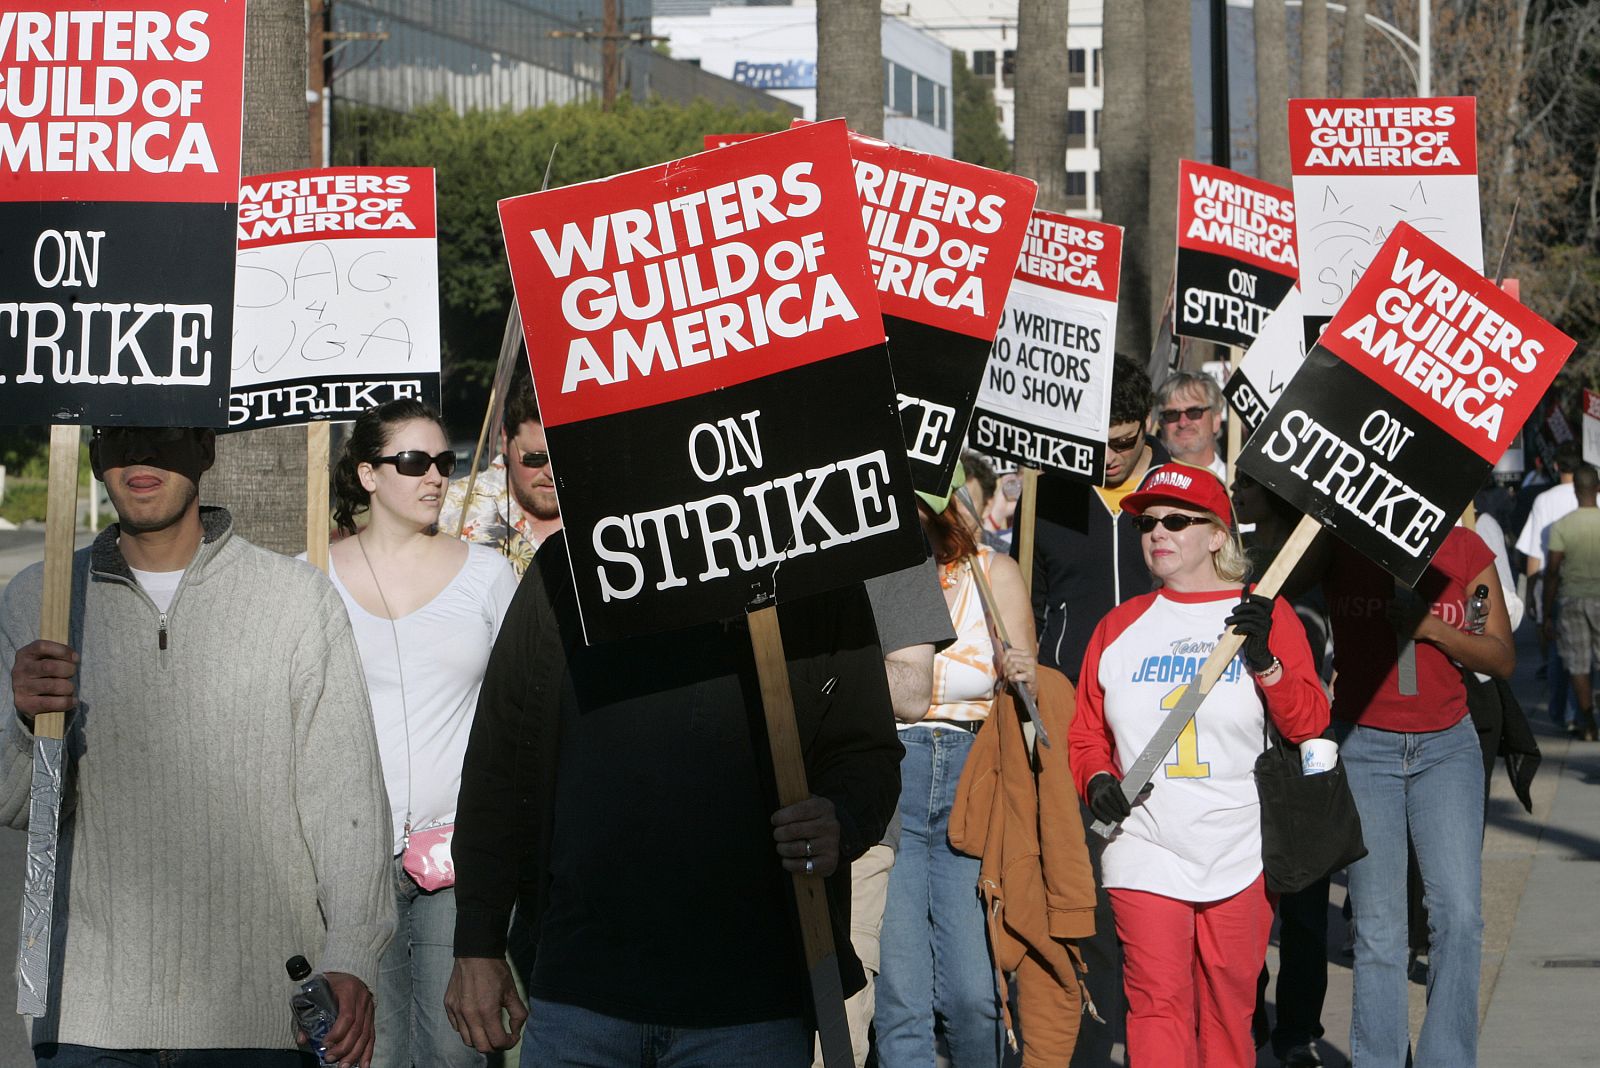 Miembros de la Asociación de Escritores de América, en plena manifestación ante los estudios de la NBC en Burbank, California.